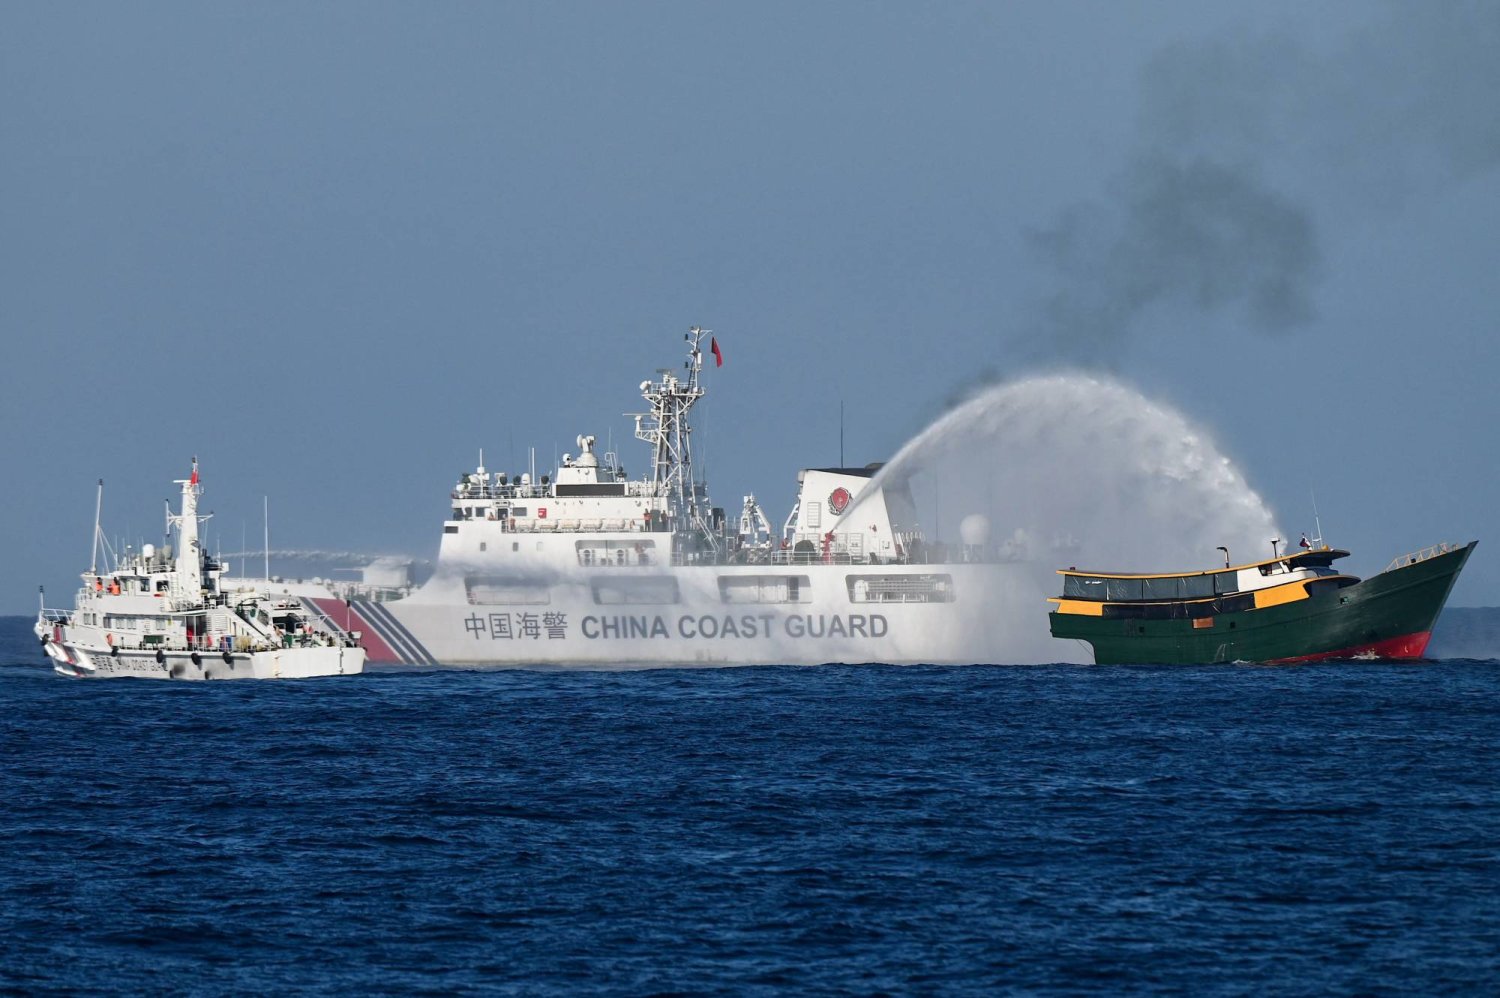 سفينة لقوة خفر السواحل الصينية ترش الماء على مركب فلبيني في منطقة متنازع عليها ببحر الصين الجنوبي (أ.ف.ب)